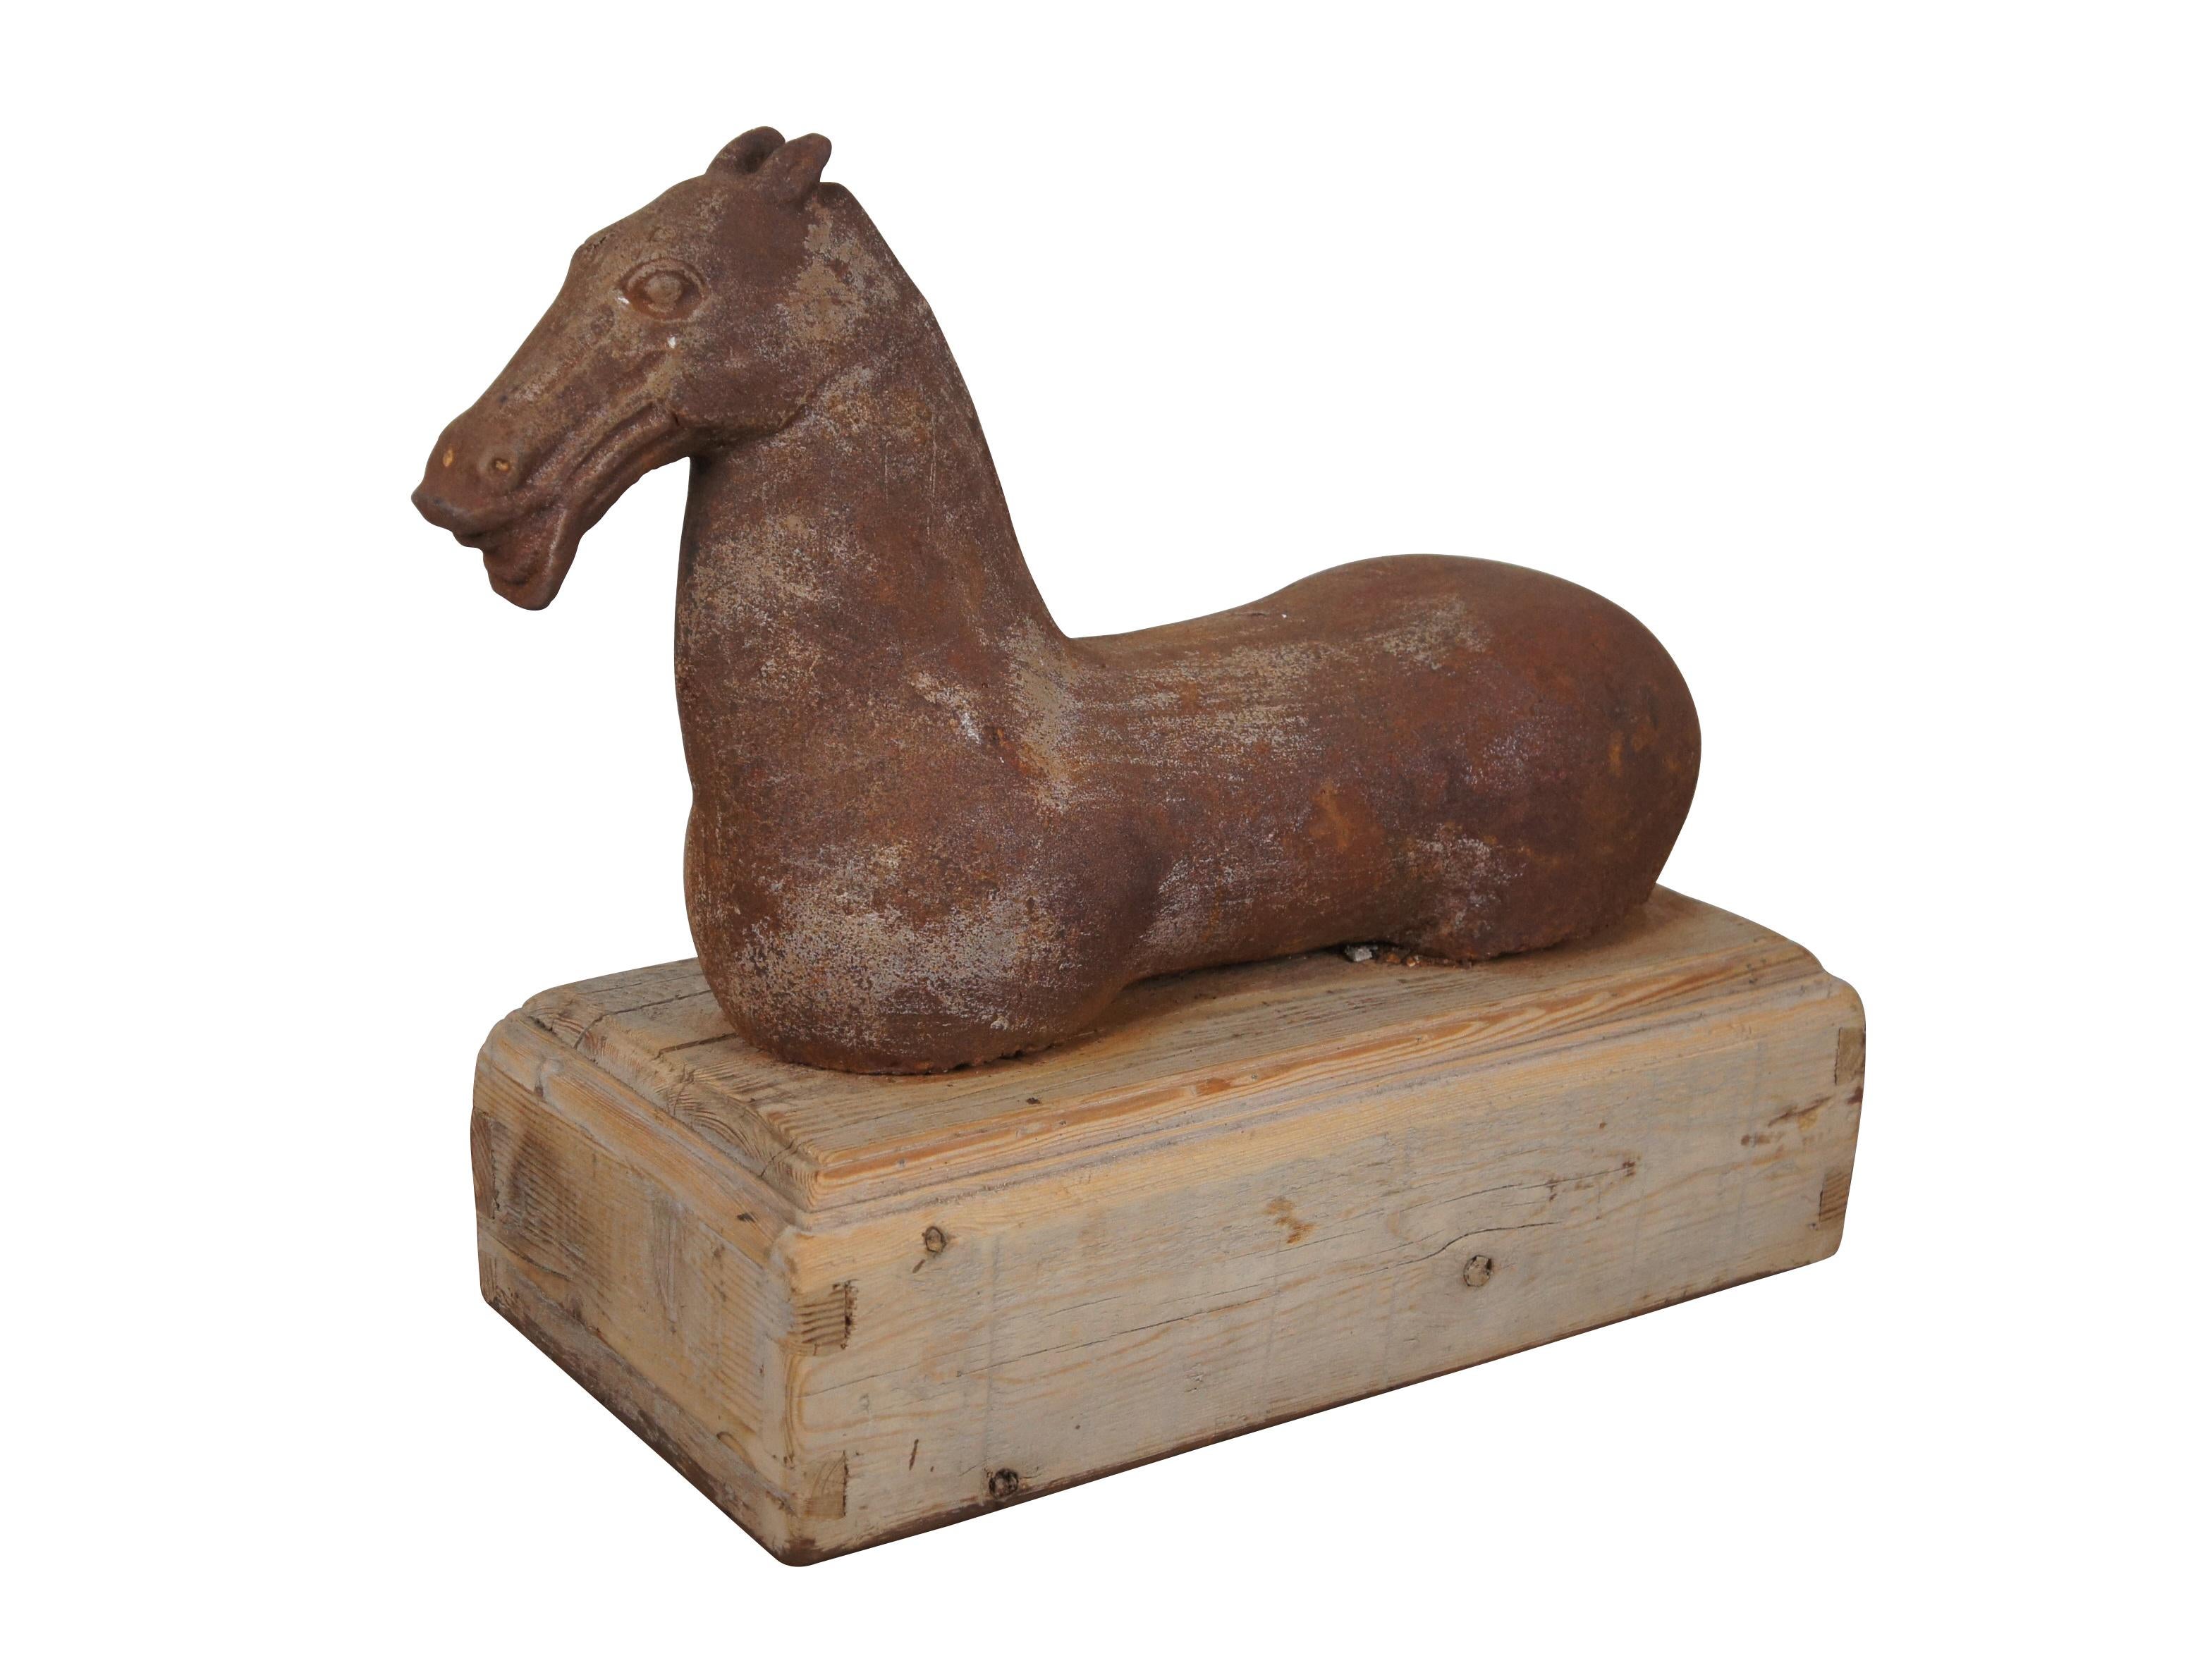 Sculpture ou poteau d'attelage en fonte du 20e siècle représentant un cheval de la dynastie Han (ou Tang) aux joues musclées, à la bouche ouverte et sans jambes. Monté sur un socle en bois creux, à queue d'aronde, non fini.

Dimensions :
20.75